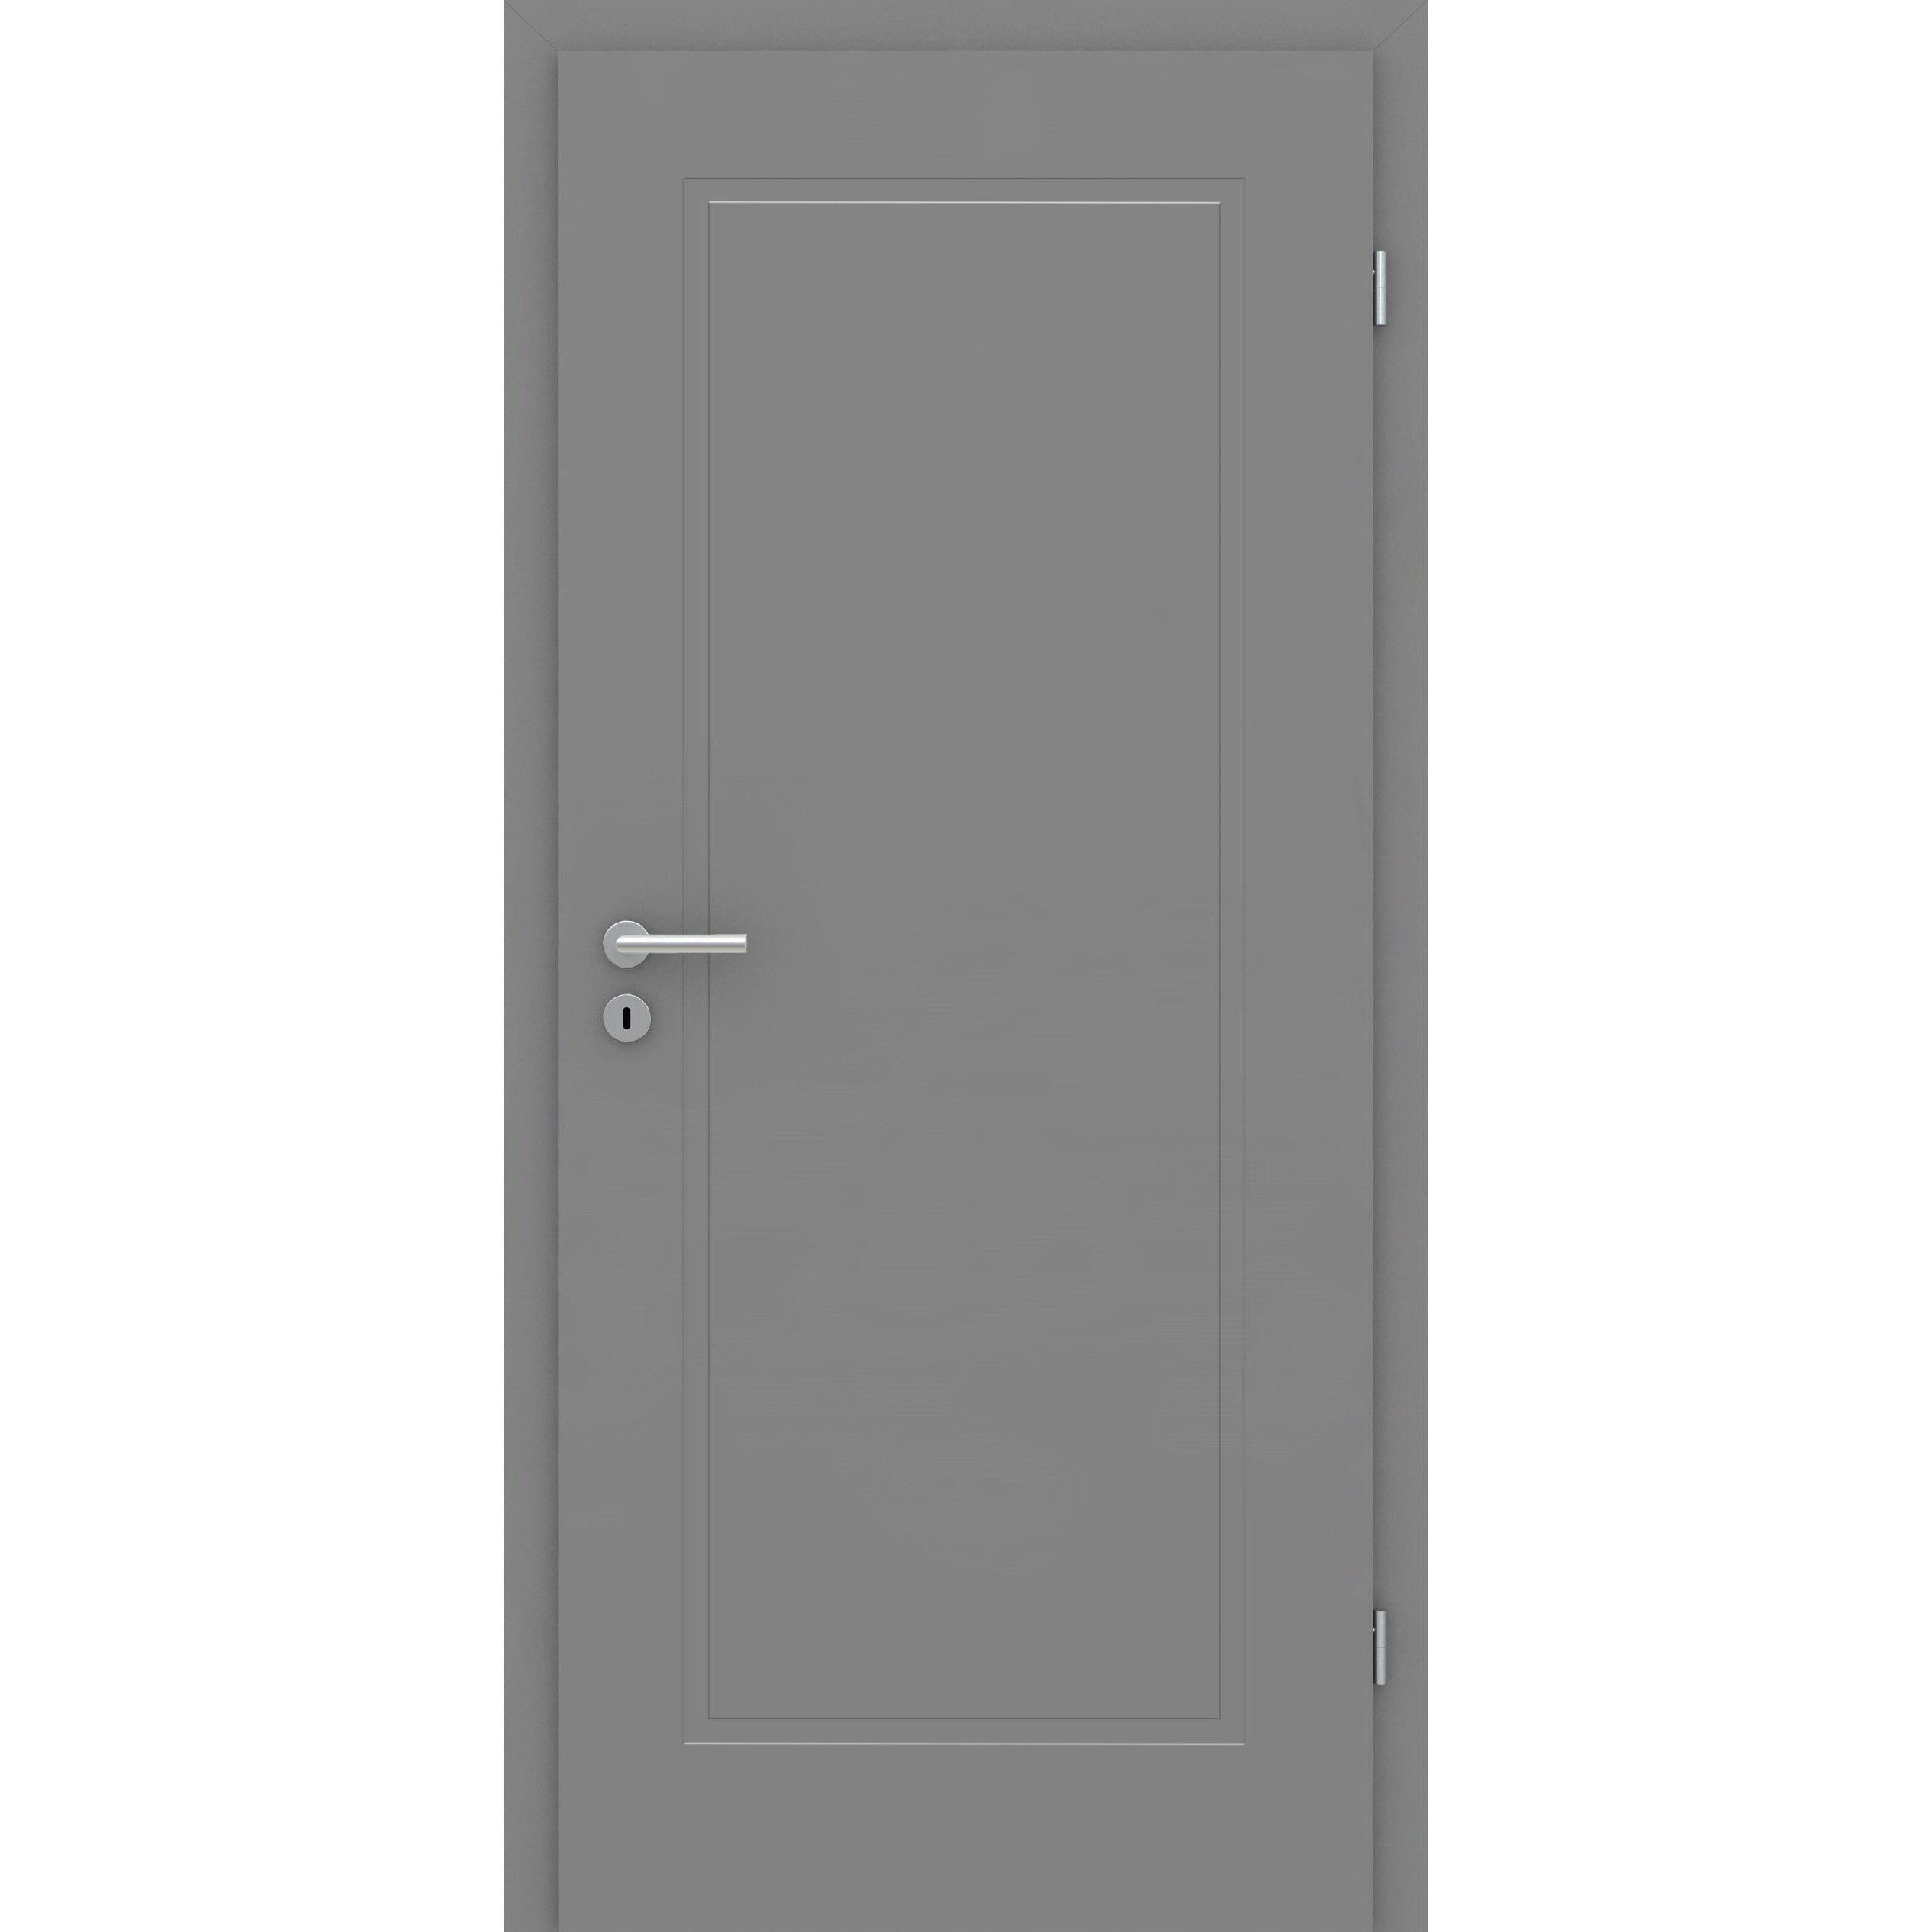 Wohnungseingangstür grau 1 Kassette Designkante SK1 / KK3 - Modell Stiltür M17